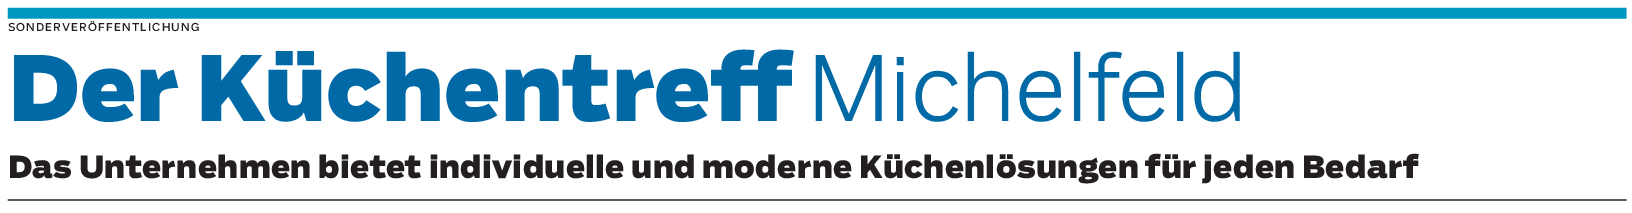 Der Küchentreff Michelfeld: Das Herzstück der eigenen vier Wände